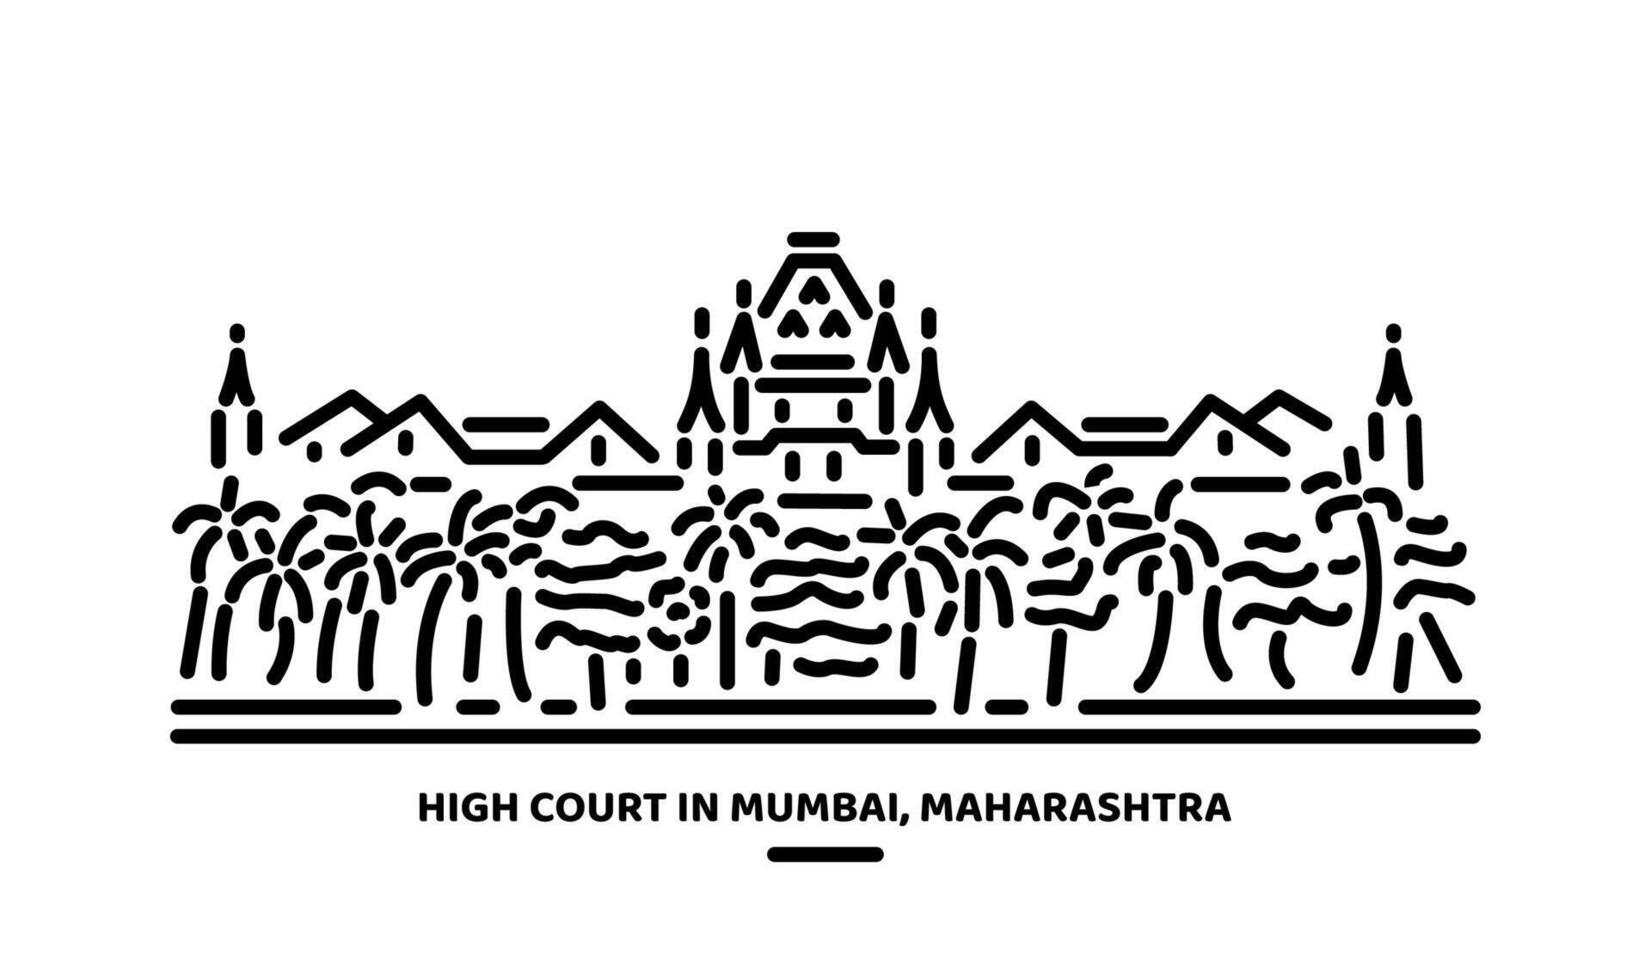 Alto quadra do Maharashtra Mumbai construção ilustração vetor